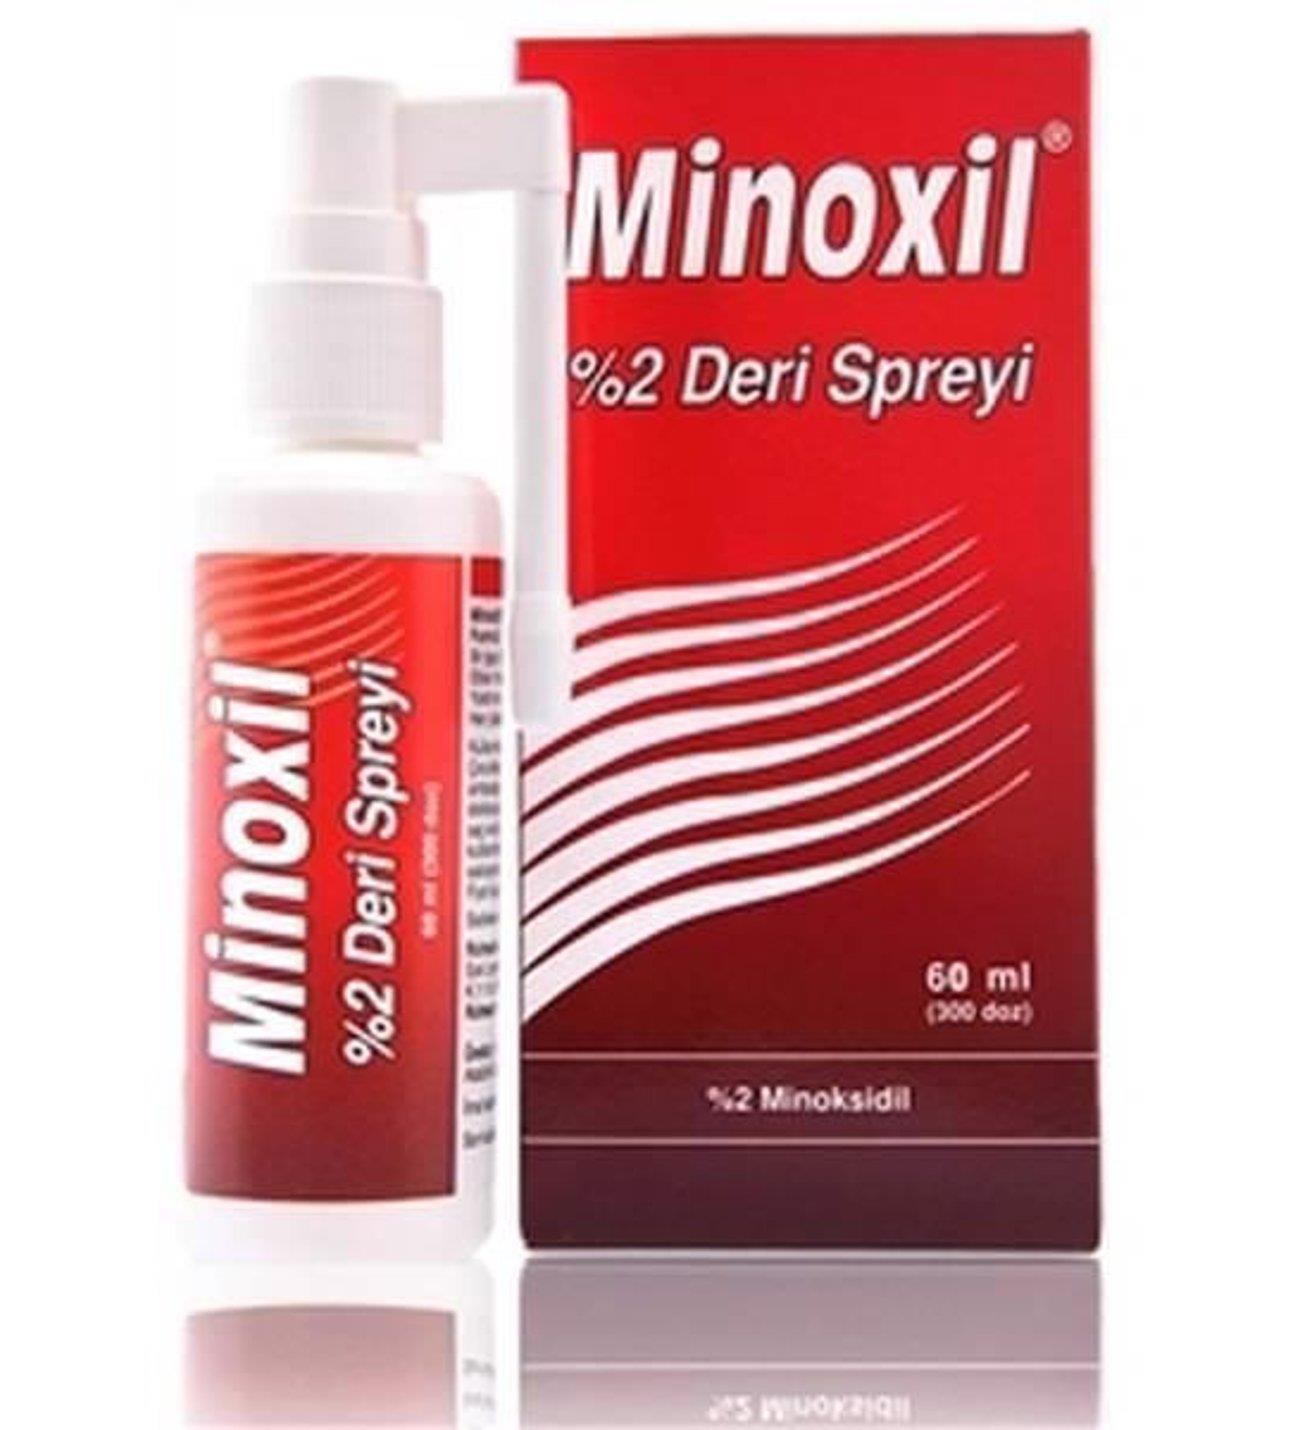 Minoxil %2 Deri Spreyi 60Ml (Kadınlar İçin)